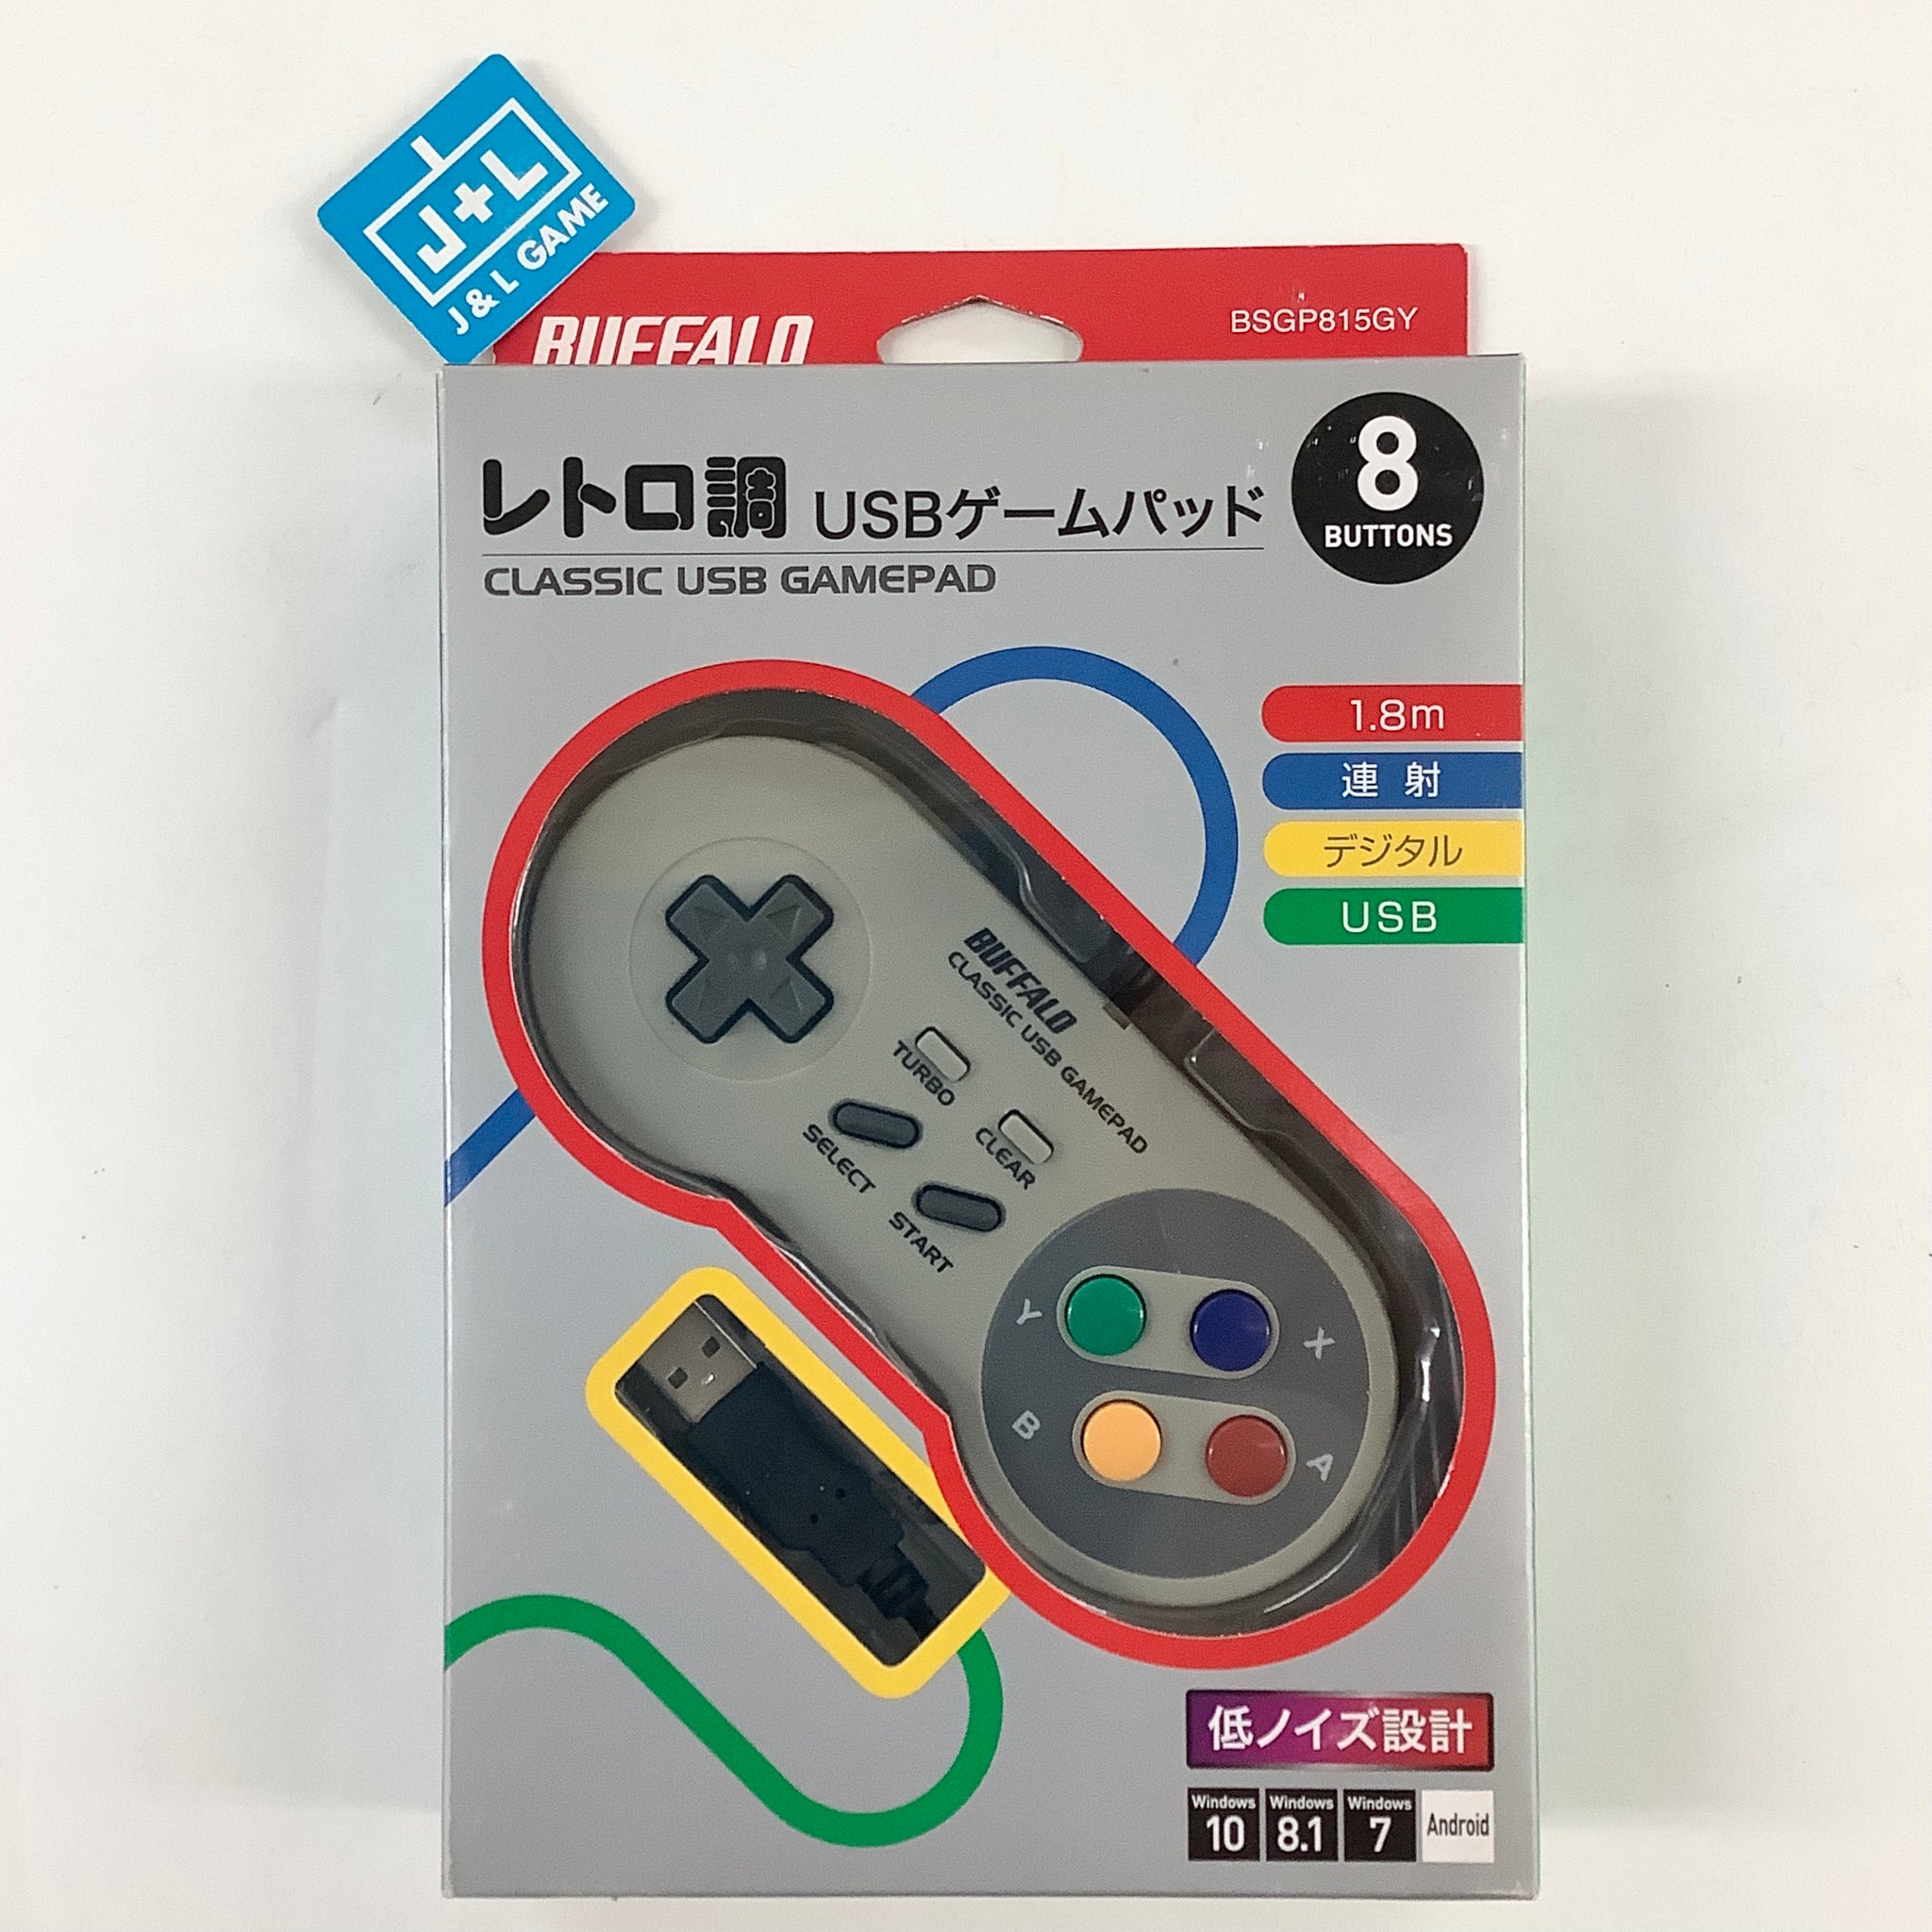 BUFFALO Super Famicom Classic Gamepad - (SFC) Super Famicom (Japan – J&L Video Games New York City